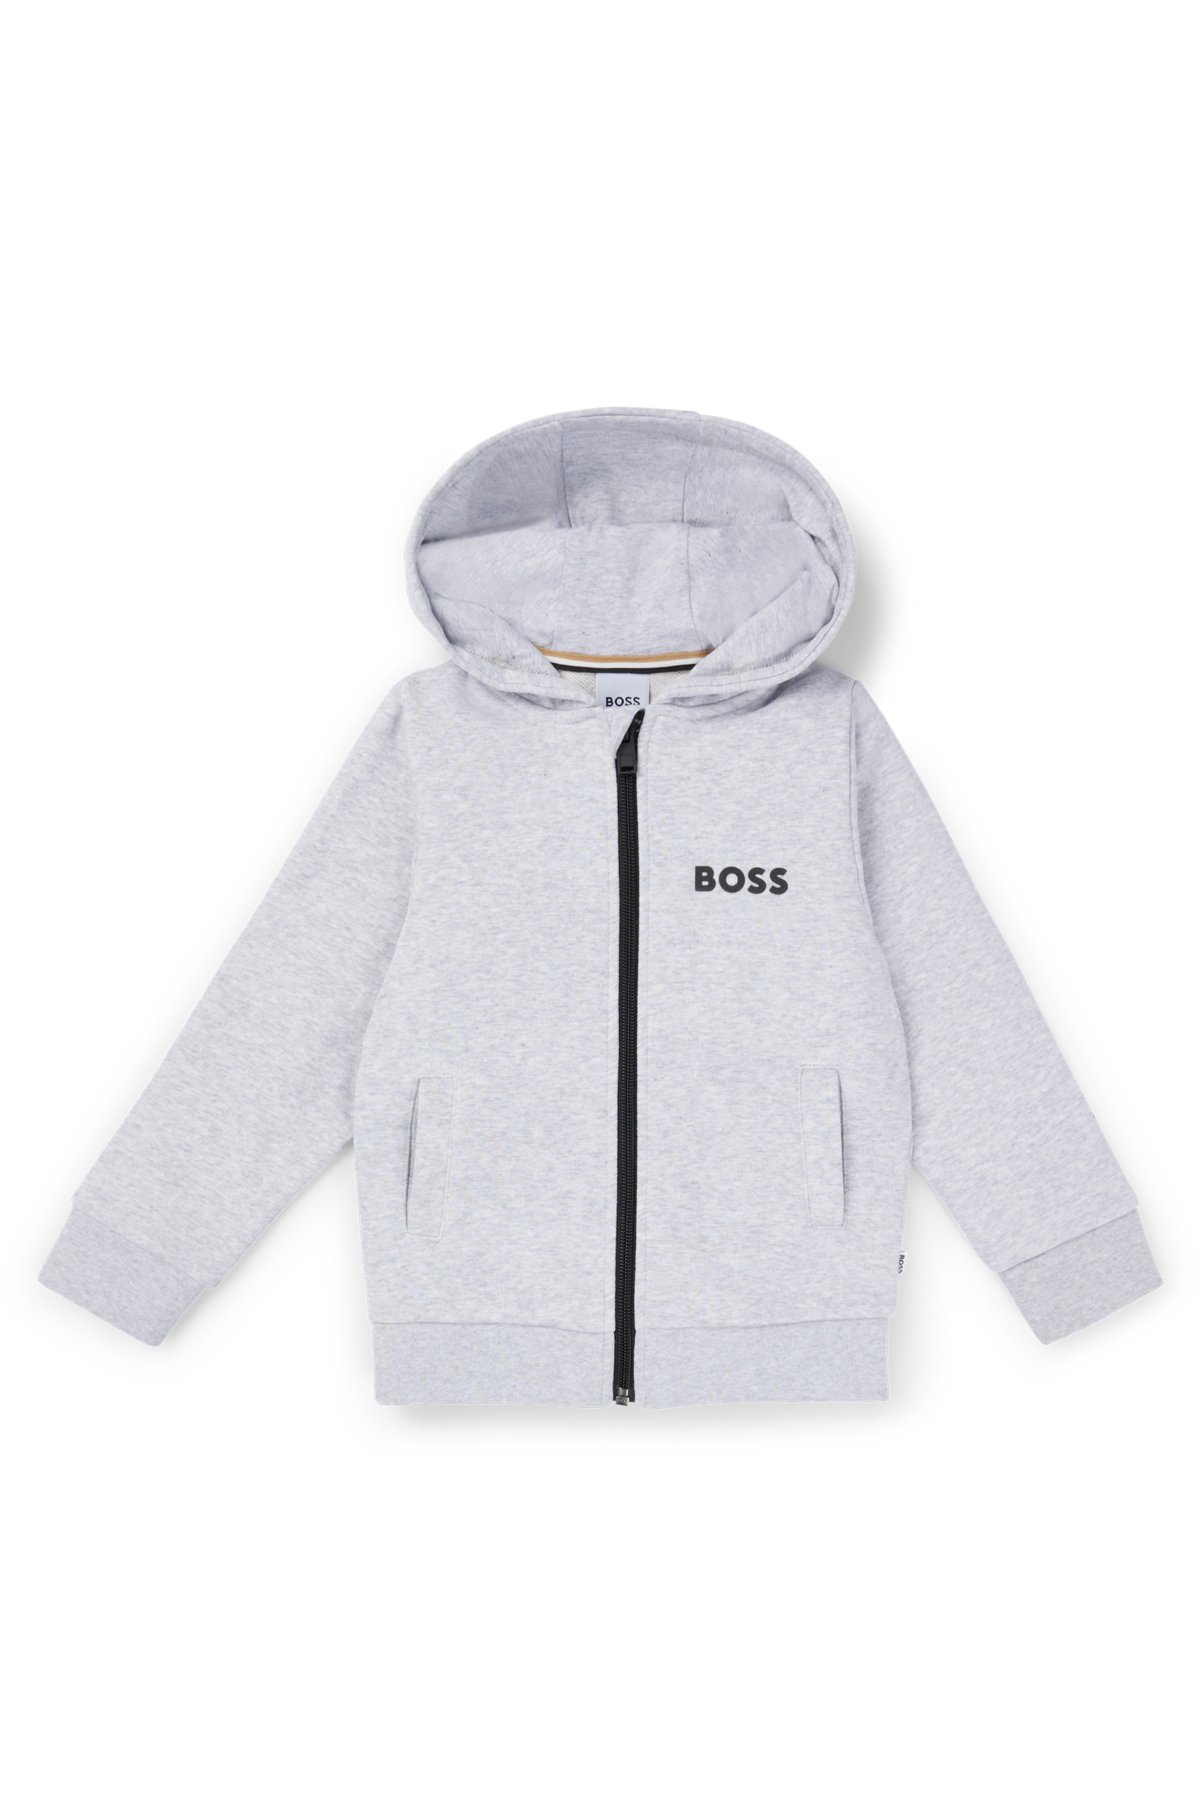 BOSS - logo contrast hoodie with Kids\' zip-up